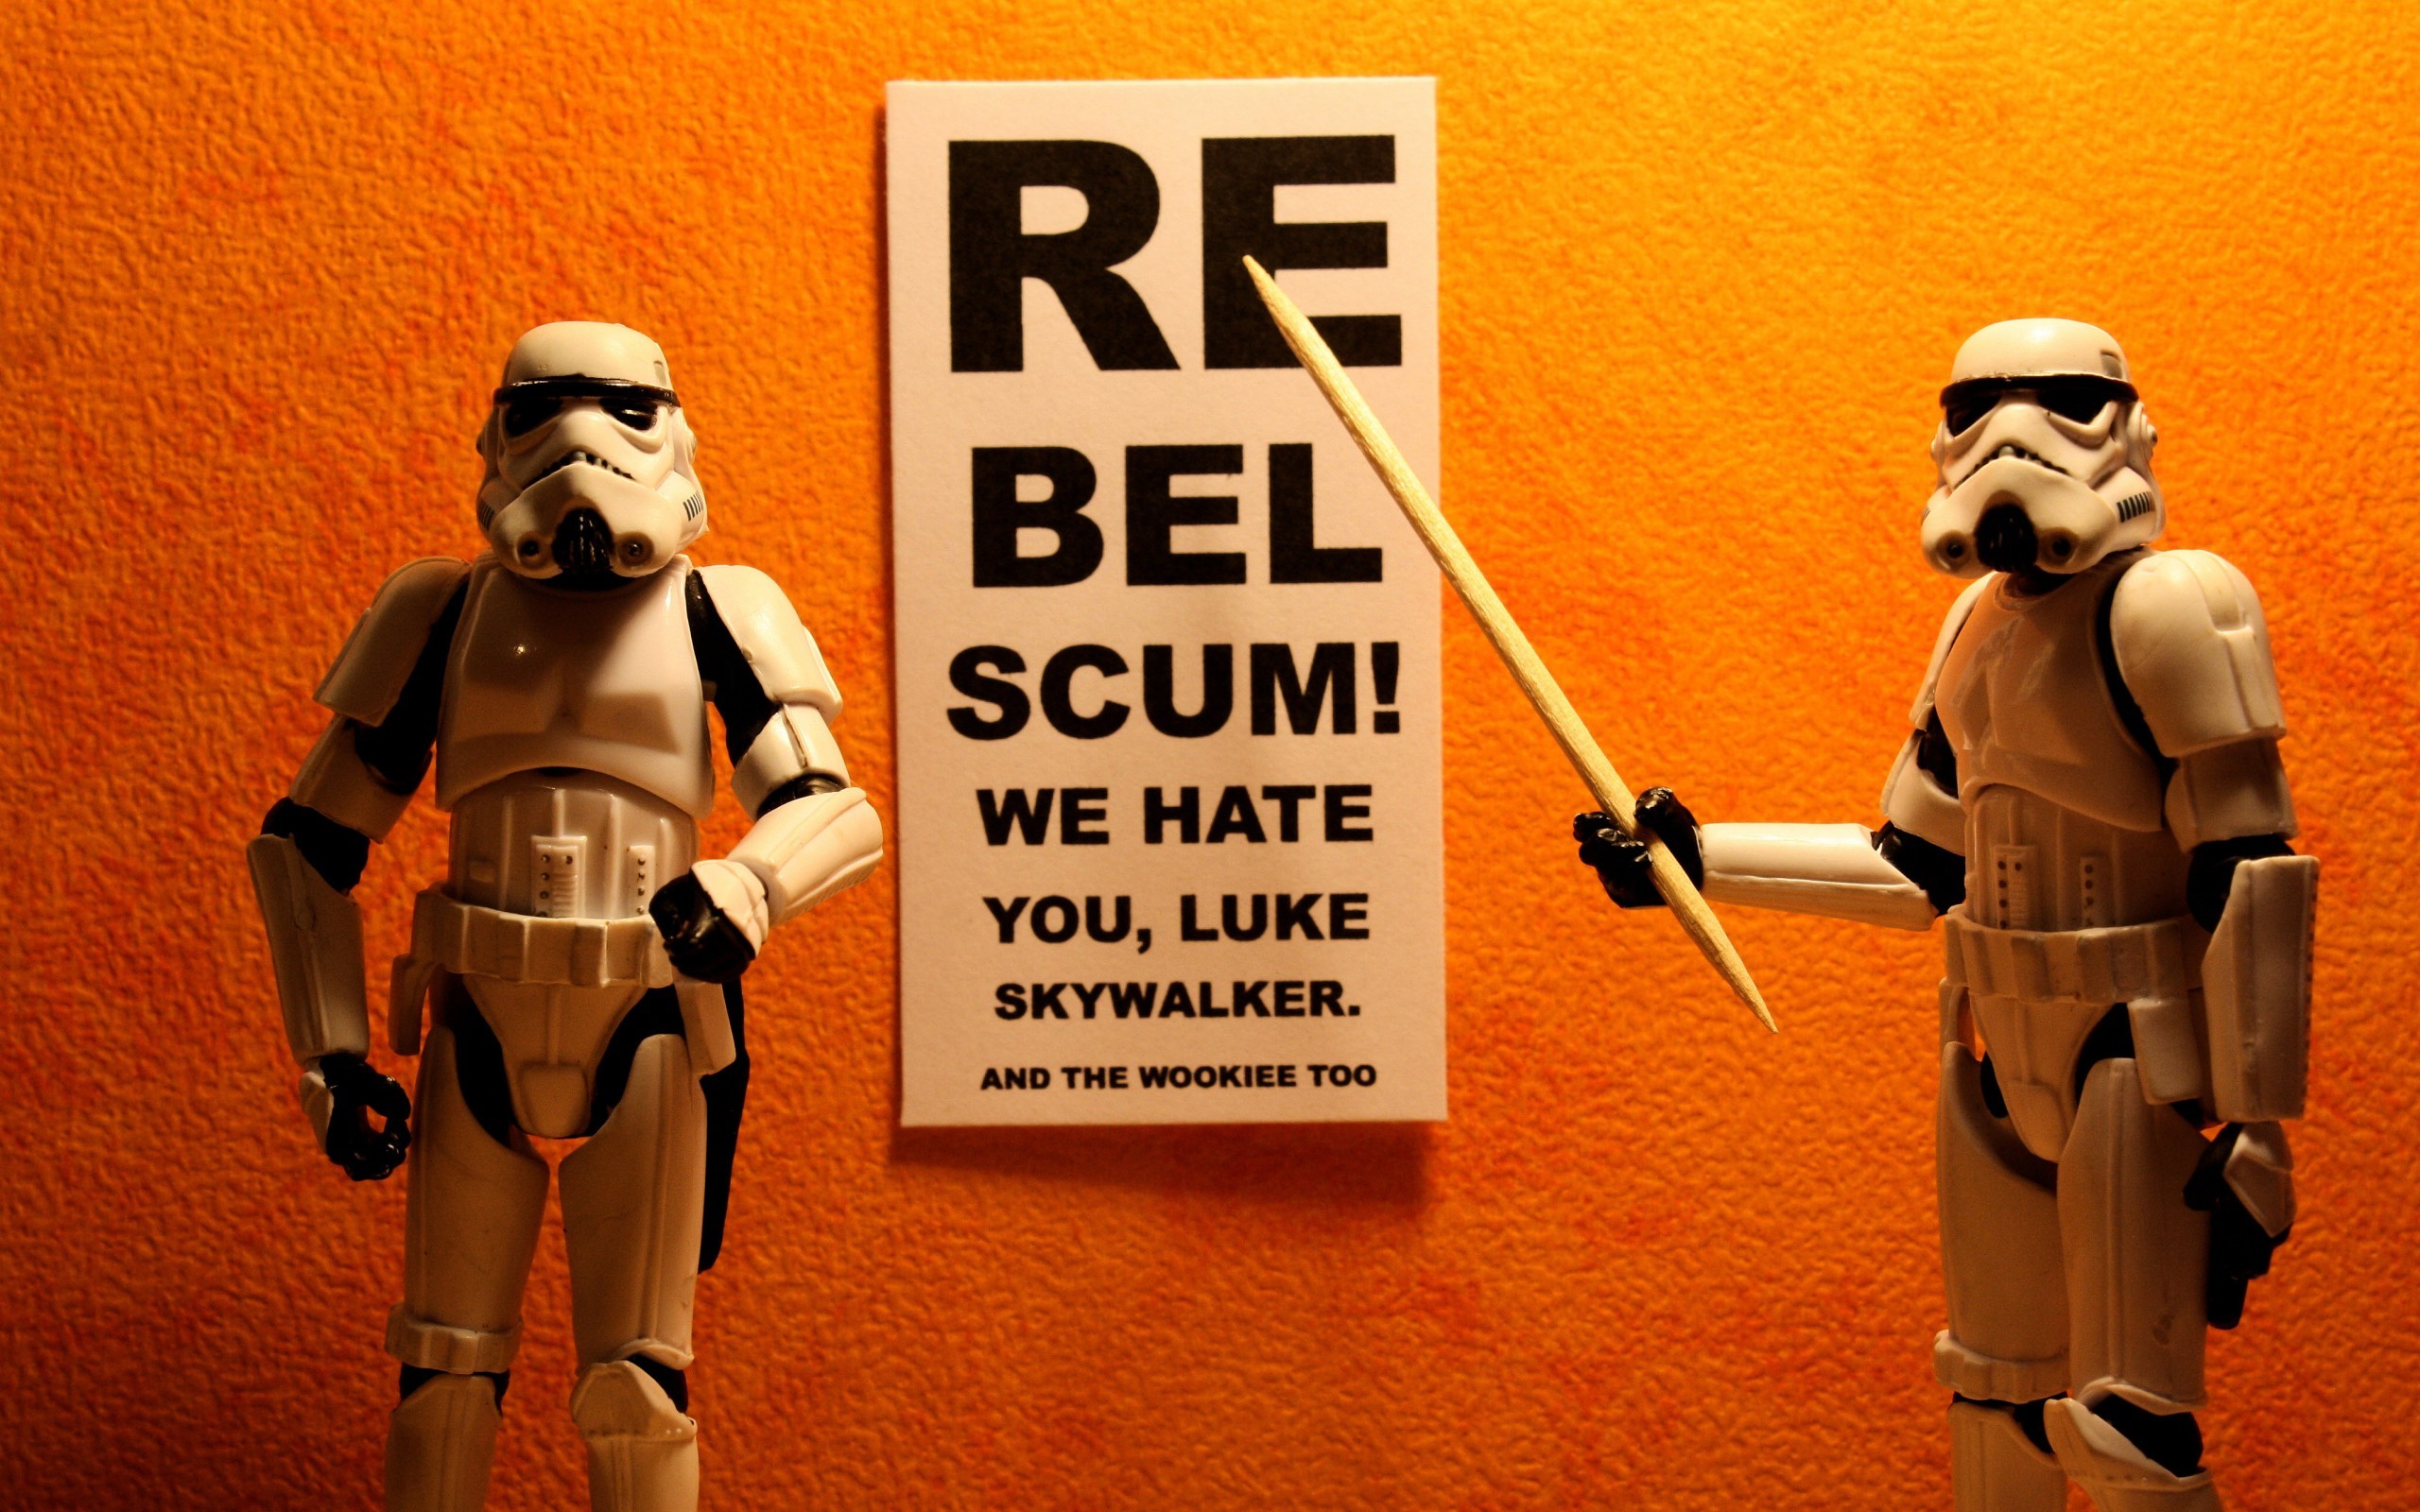 Humor Star Wars Humor Toys Action Figures Stormtrooper 2560x1600